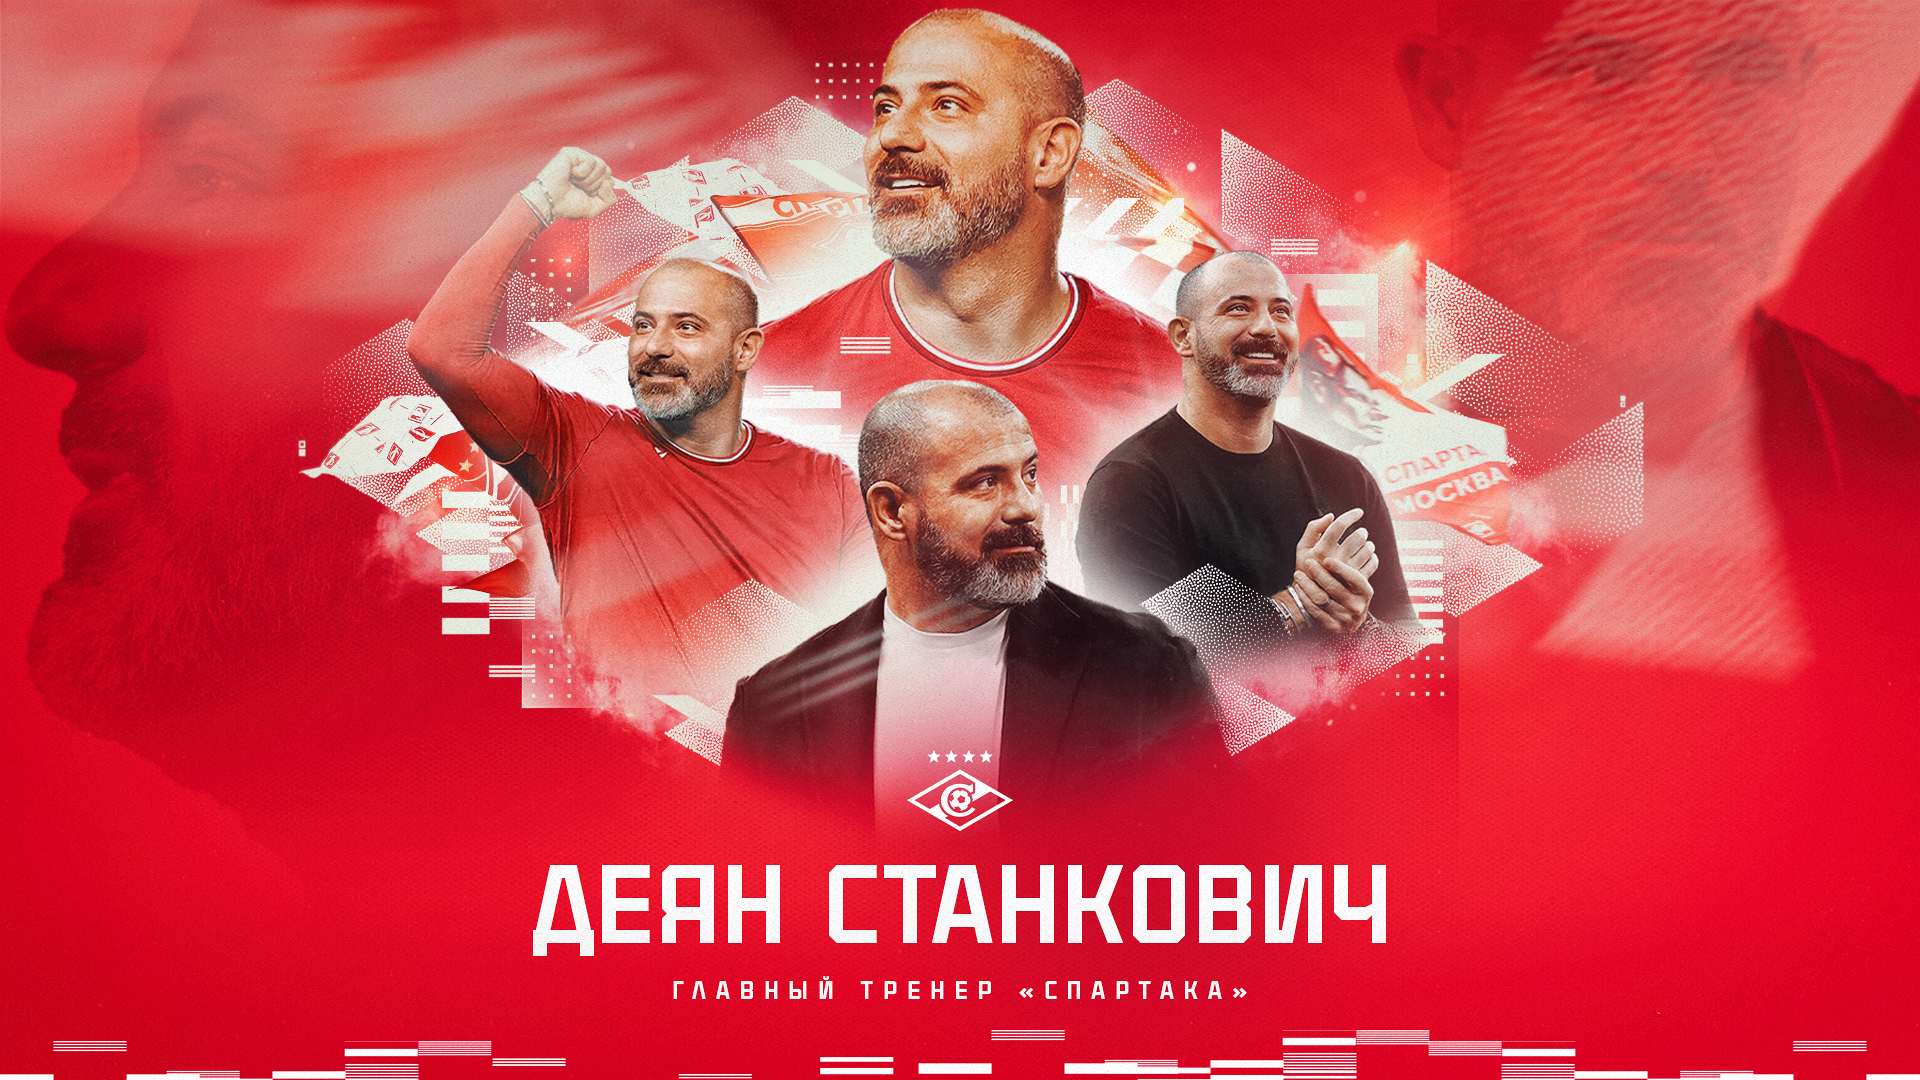 Деян Станкович — главный тренер «Спартака» с нового сезона. Официально! 